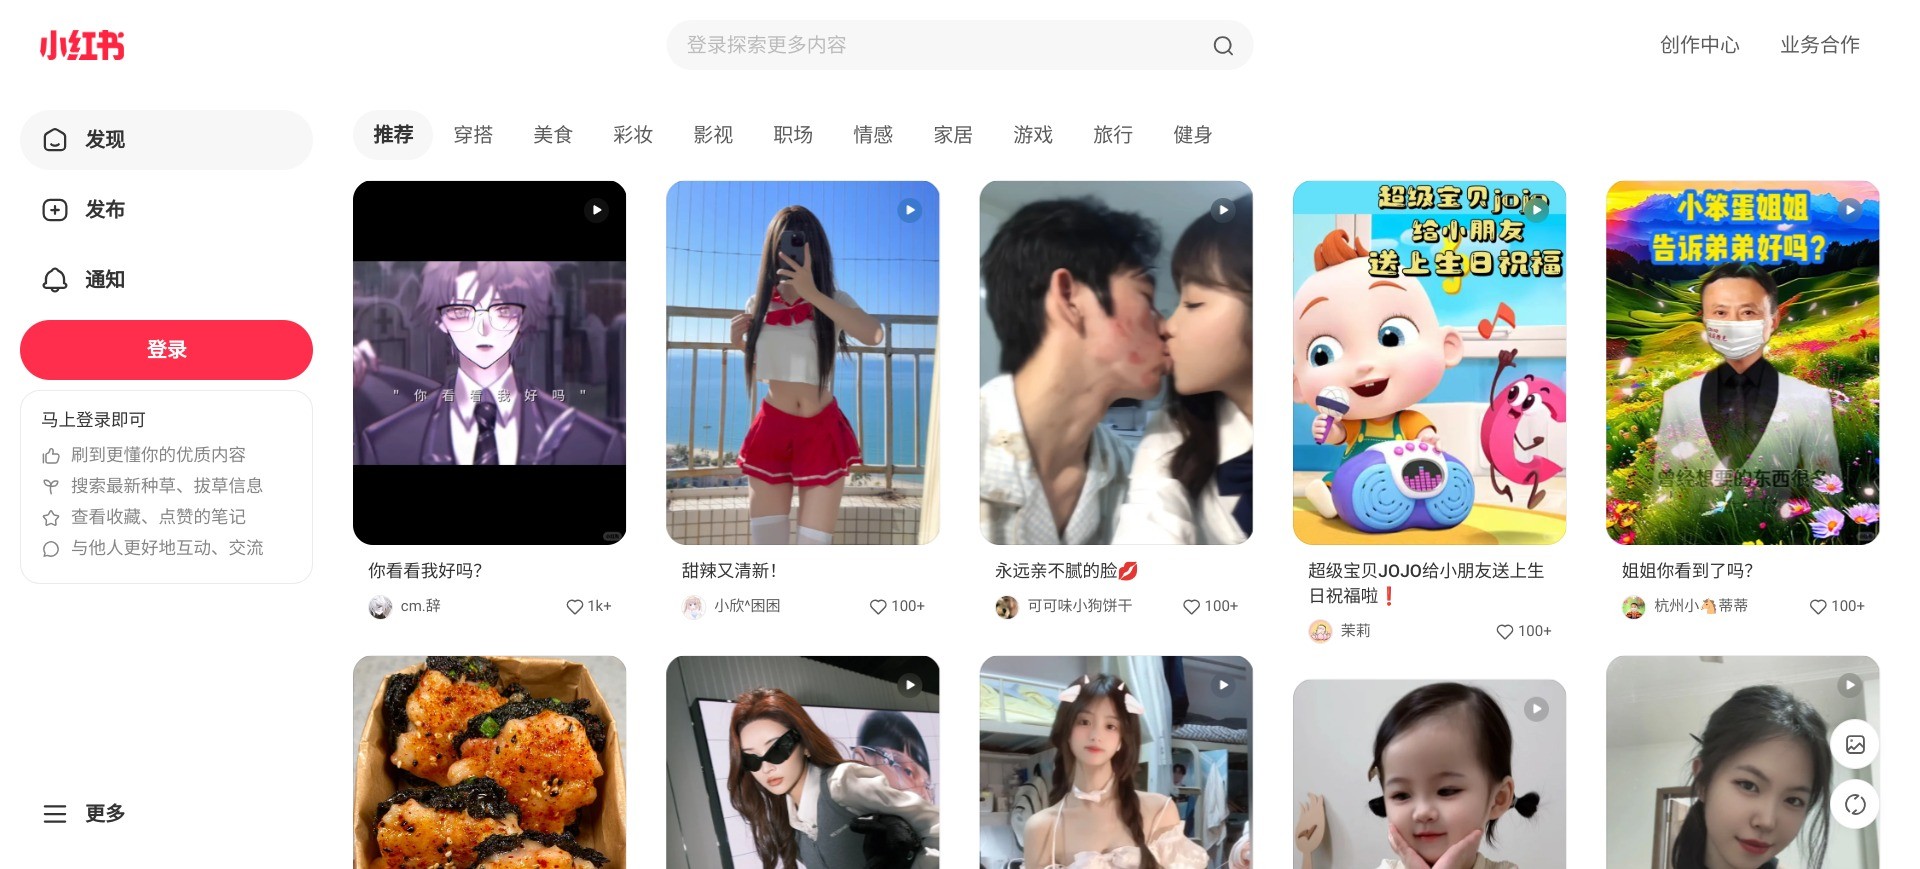 Screenshot of www.xiaohongshu.com’s homepage in its original Chinese